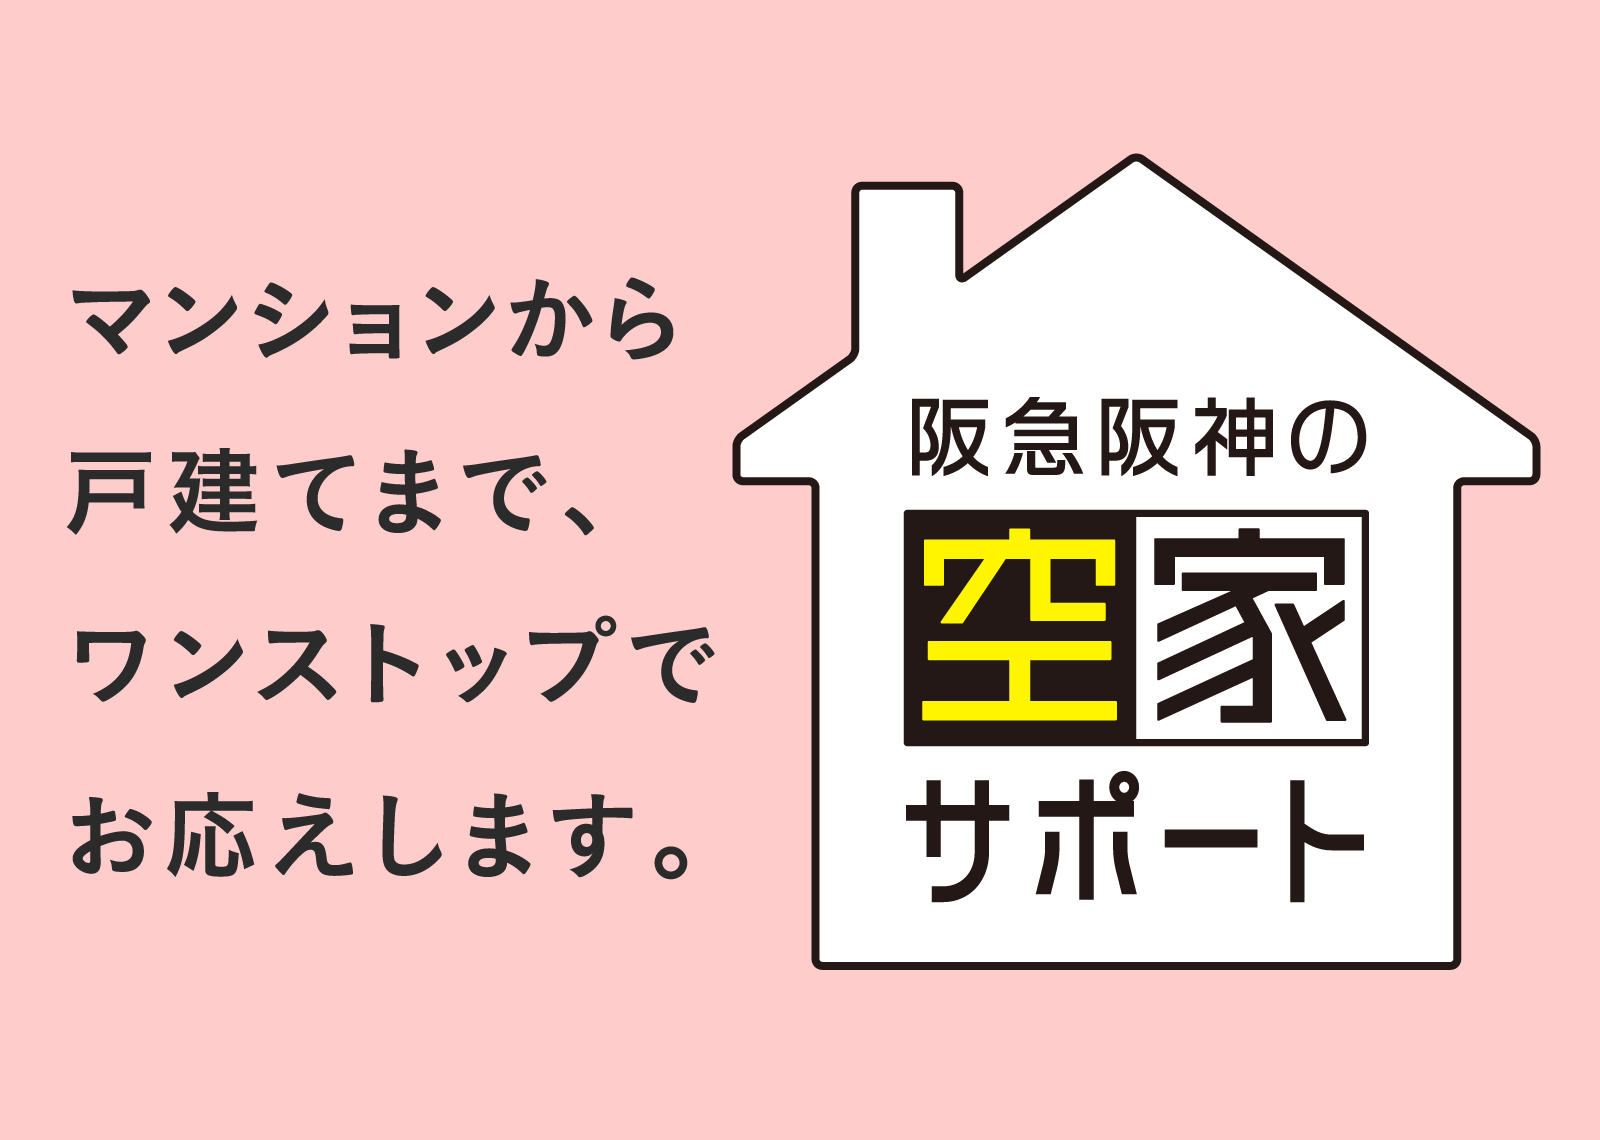 マンションから戸建てまで、ワンストップでお応えします。阪神阪急の空家サポート